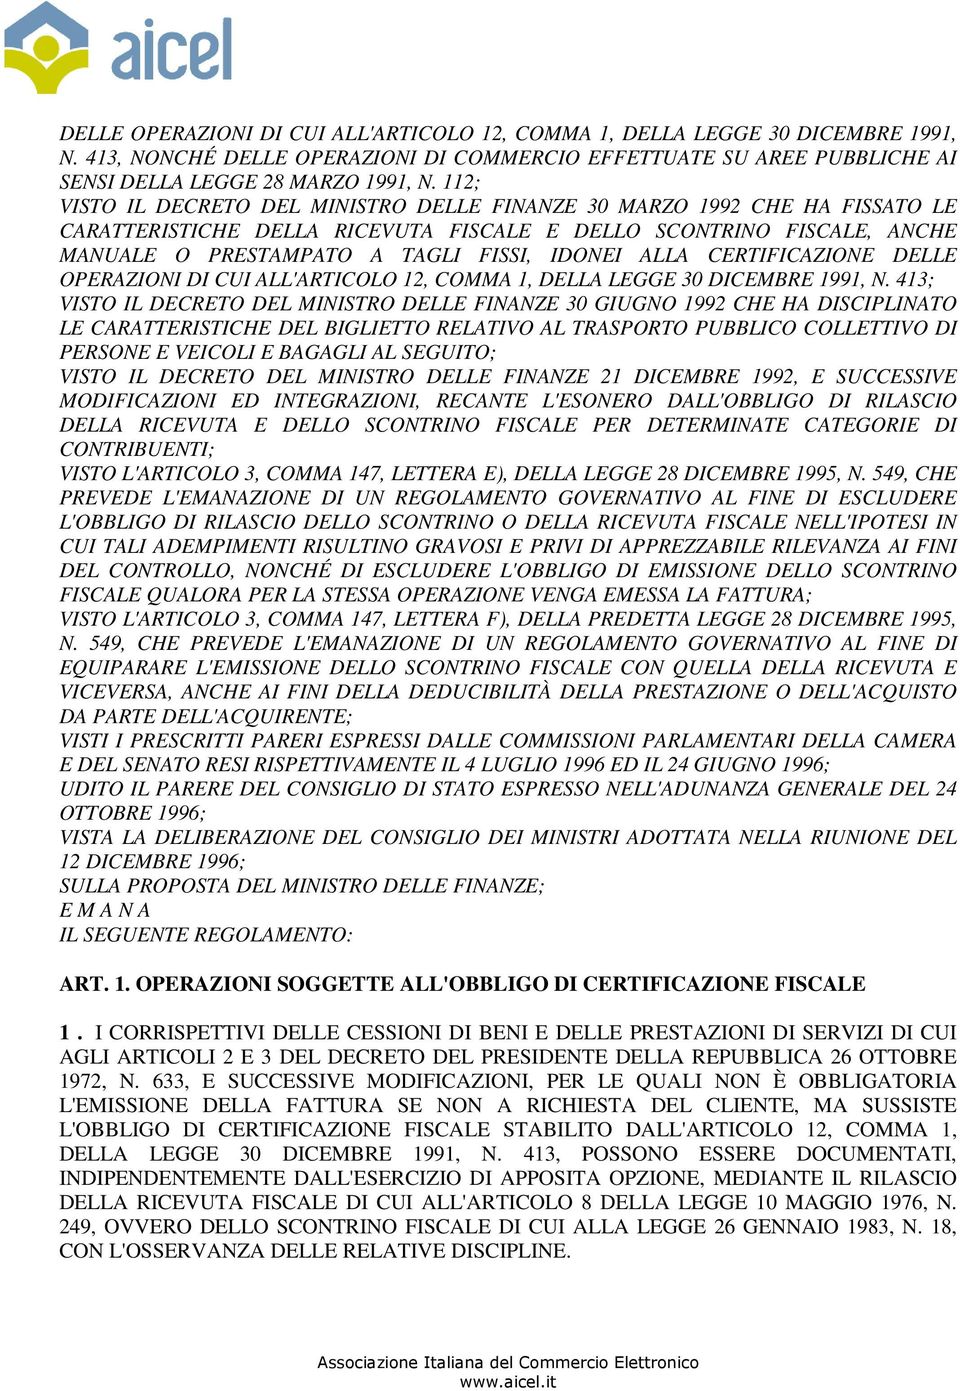 ALLA CERTIFICAZIONE DELLE OPERAZIONI DI CUI ALL'ARTICOLO 12, COMMA 1, DELLA LEGGE 30 DICEMBRE 1991, N.